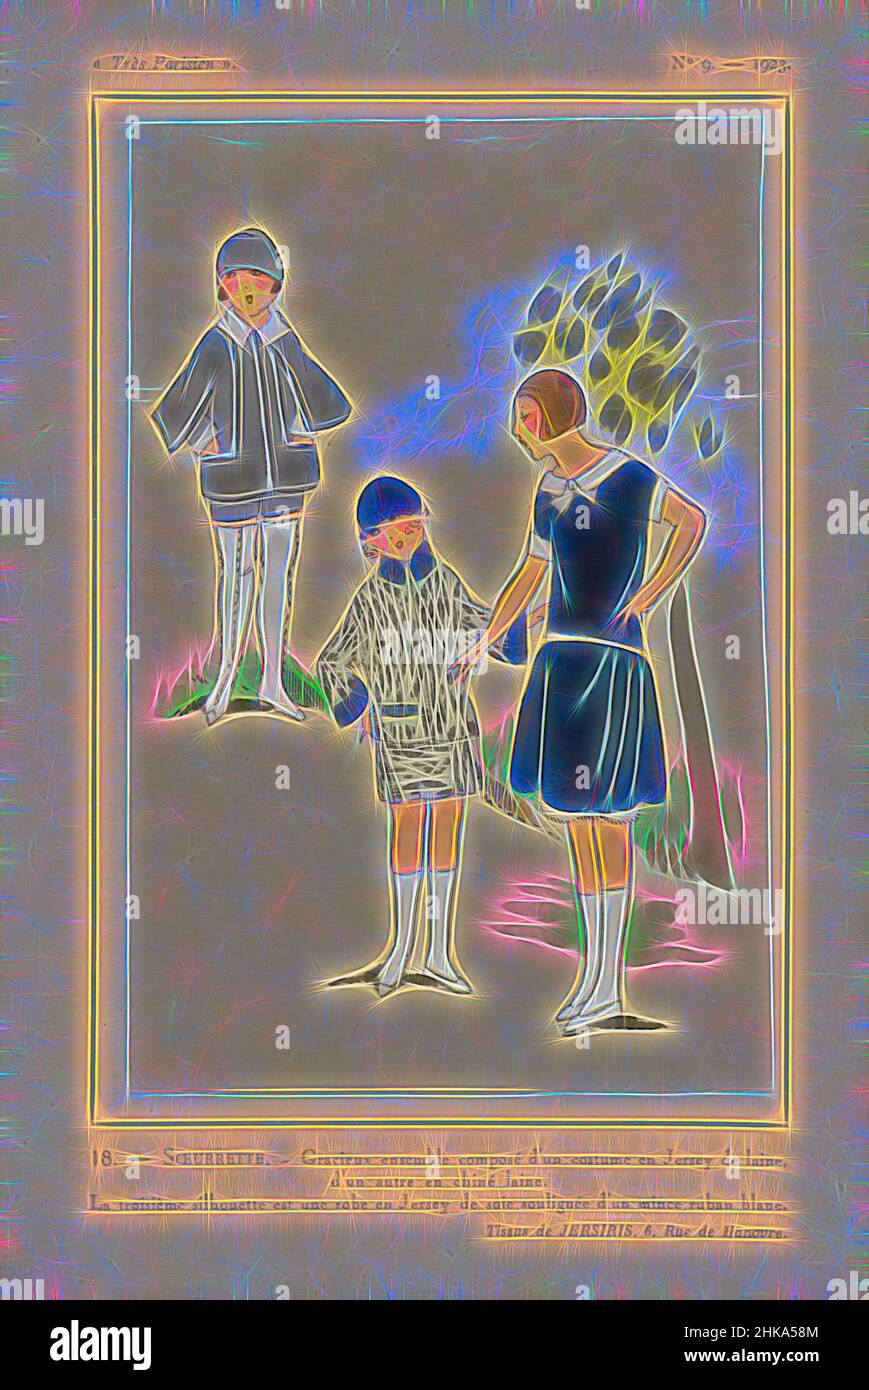 Inspiriert von Très Parisien, 1923, Nr. 9: 18. - SOEURETTE. - Gracieux Ensemble composé..., Kinderkleidung. Kostüm aus Wolltrikot, das andere aus 'Chiné laine' (Wolle). Kinderkleid aus Seidenjersey, verziert mit einem dünnen weißen Band. Stoffe von Jersiris. Druck aus dem Modemagazin Très, Reimagined by Artotop. Klassische Kunst neu erfunden mit einem modernen Twist. Design von warmen fröhlichen Leuchten der Helligkeit und Lichtstrahl Strahlkraft. Fotografie inspiriert von Surrealismus und Futurismus, umarmt dynamische Energie der modernen Technologie, Bewegung, Geschwindigkeit und Kultur zu revolutionieren Stockfoto